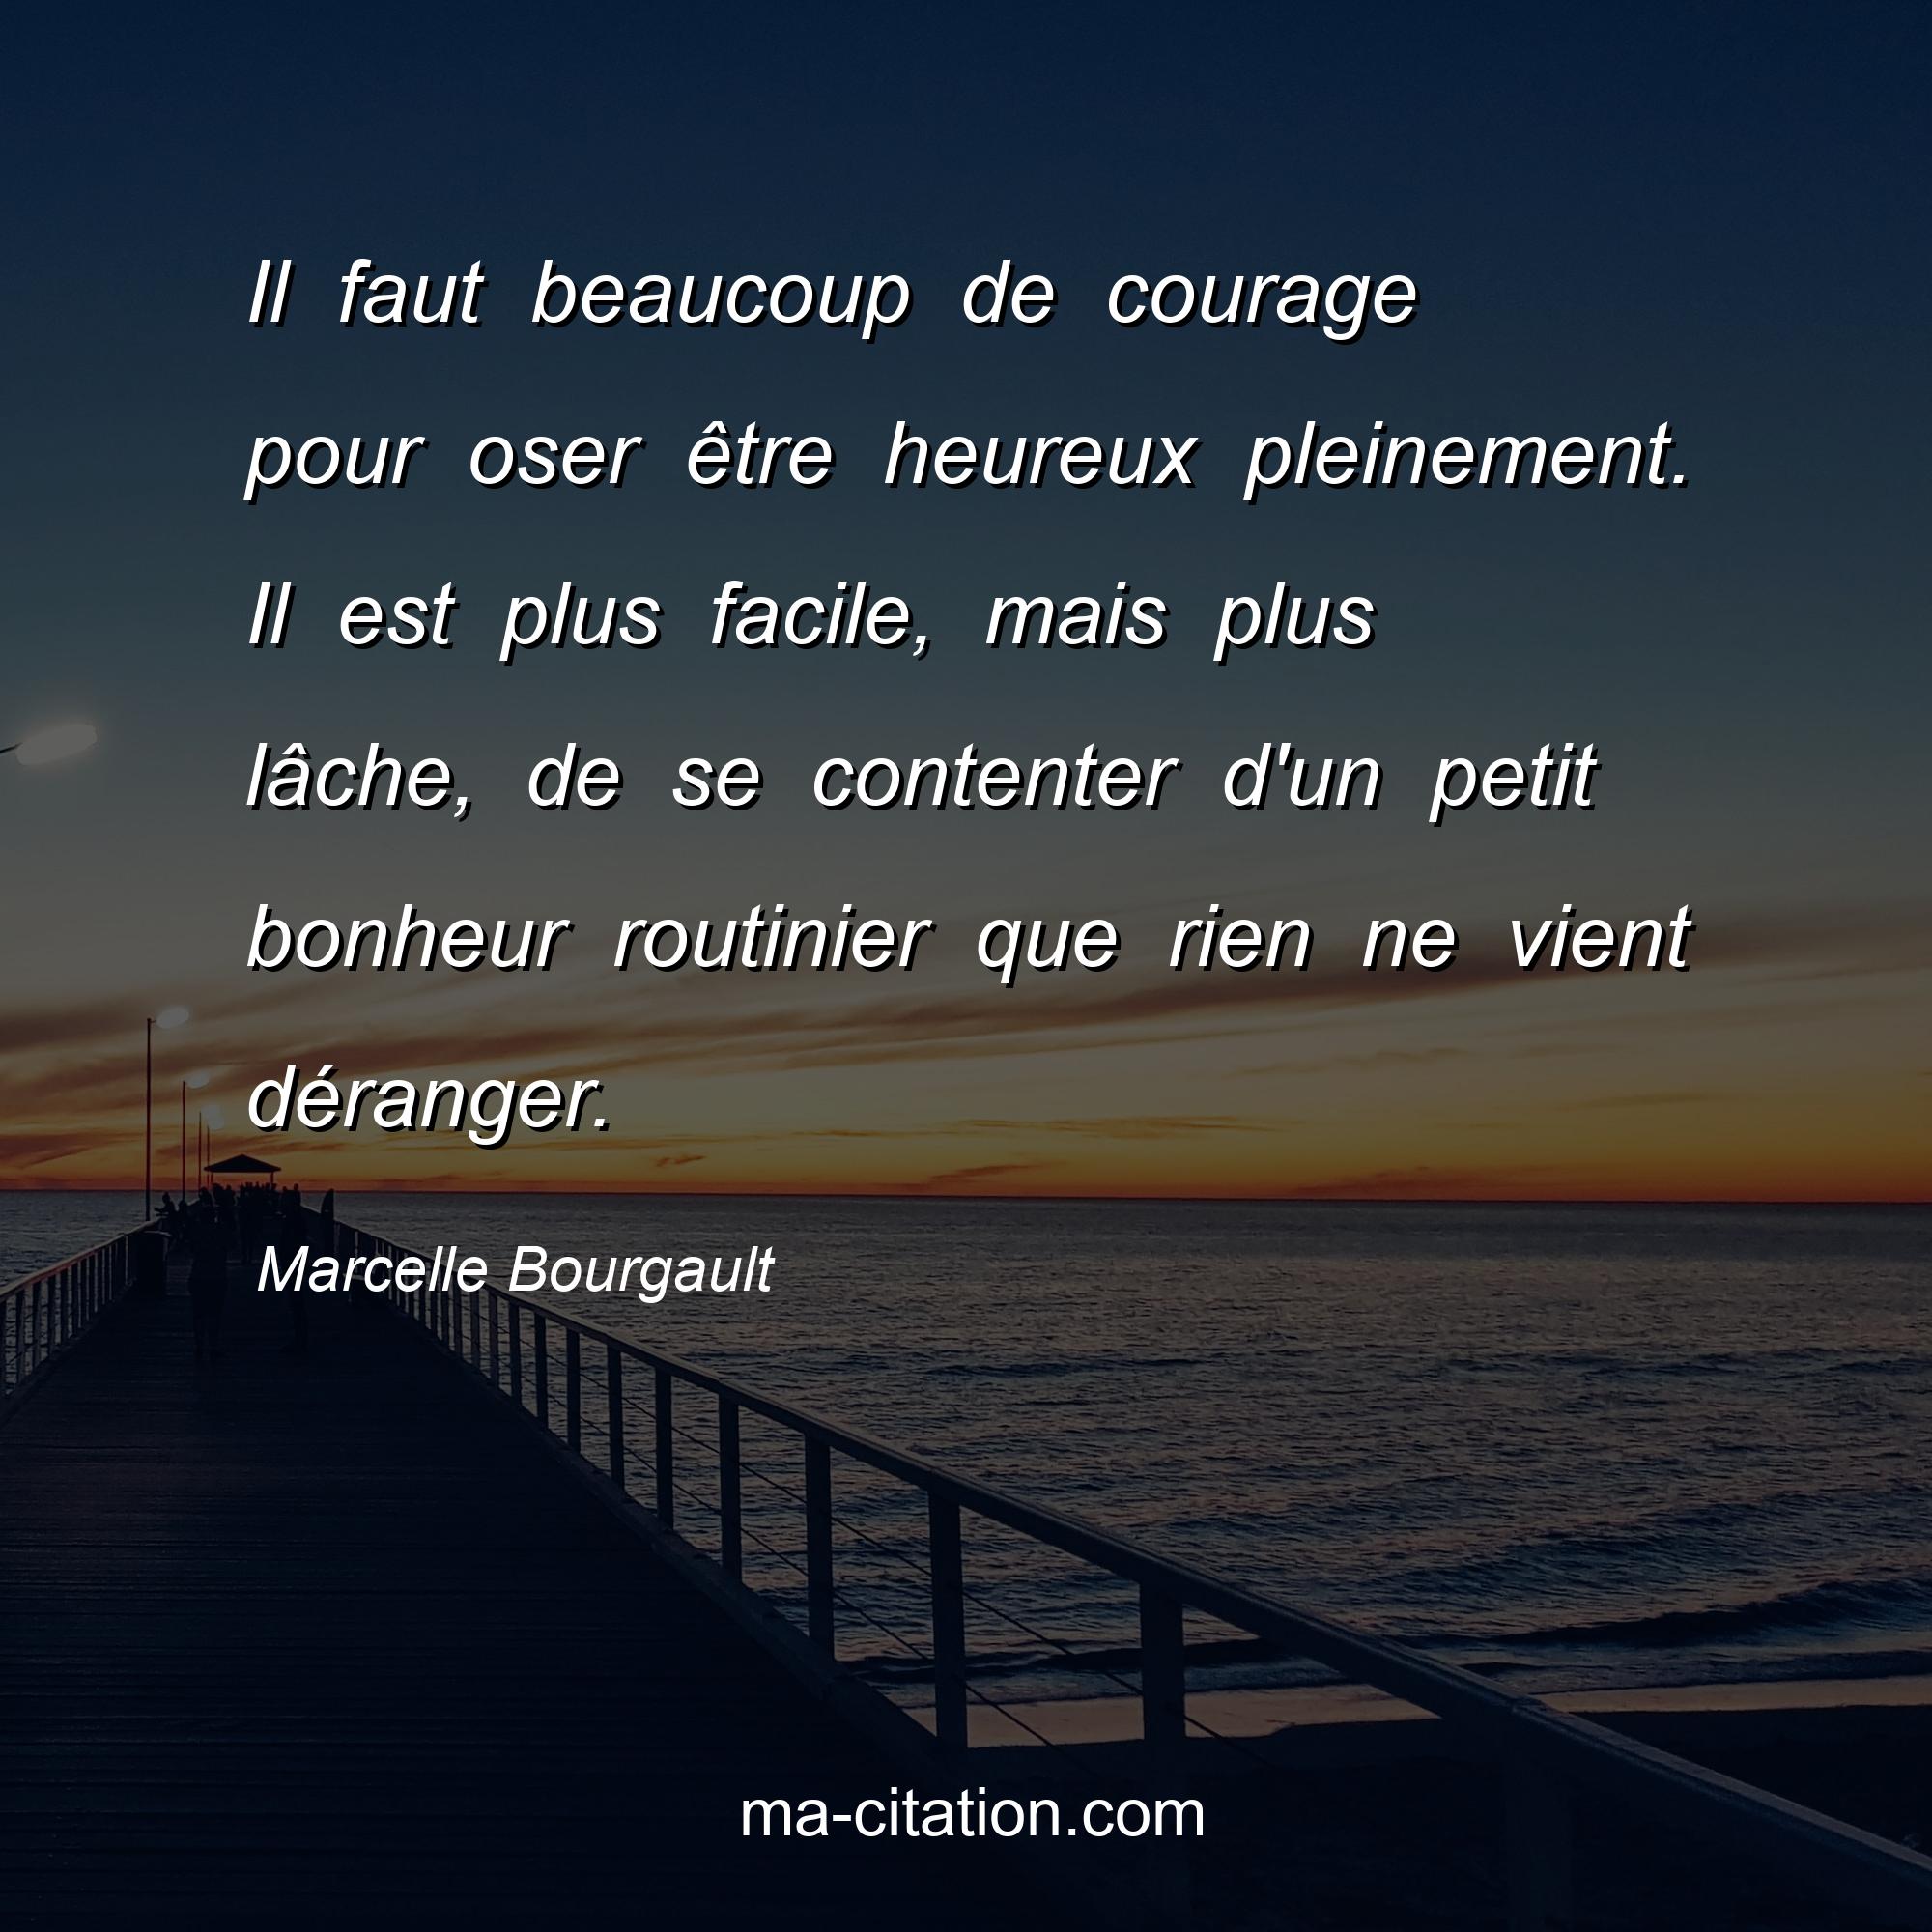 Marcelle Bourgault : Il faut beaucoup de courage pour oser être heureux pleinement. Il est plus facile, mais plus lâche, de se contenter d'un petit bonheur routinier que rien ne vient déranger.